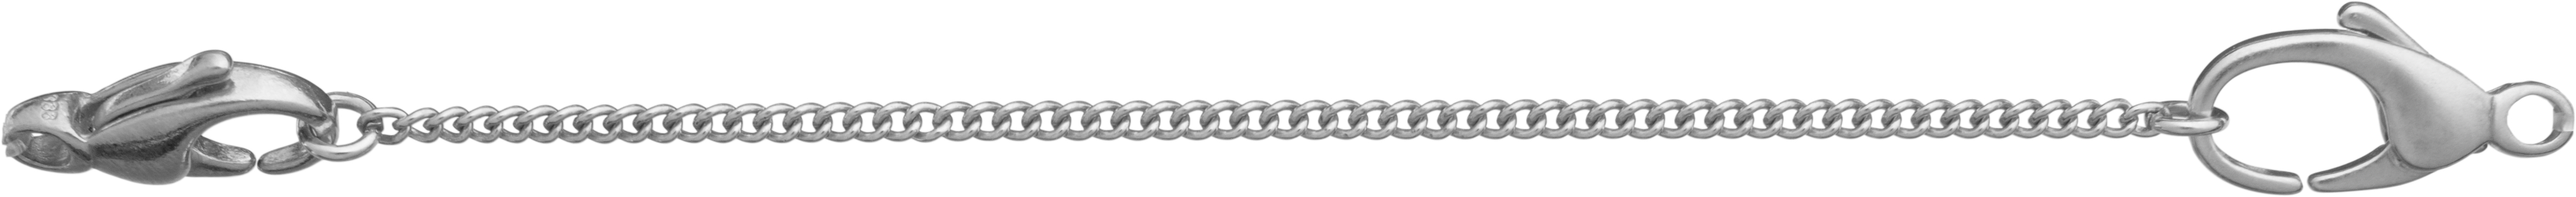 veiligheidsketting schakel zilver 925/- lengte 70,00mm, met open bindringen